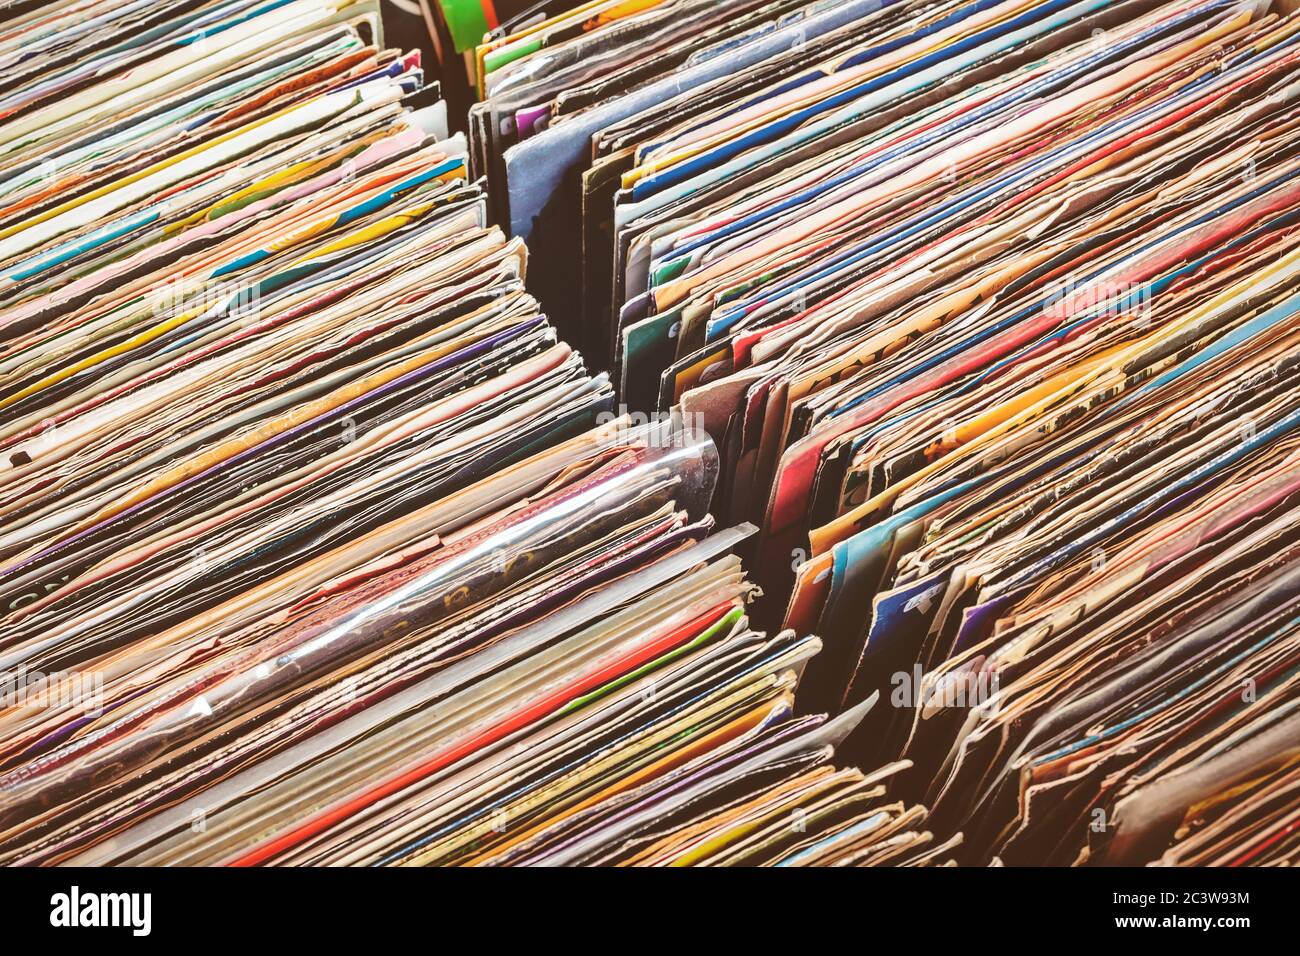 Image style rétro de boîtes avec platine vinyl records sur un marché aux puces Banque D'Images